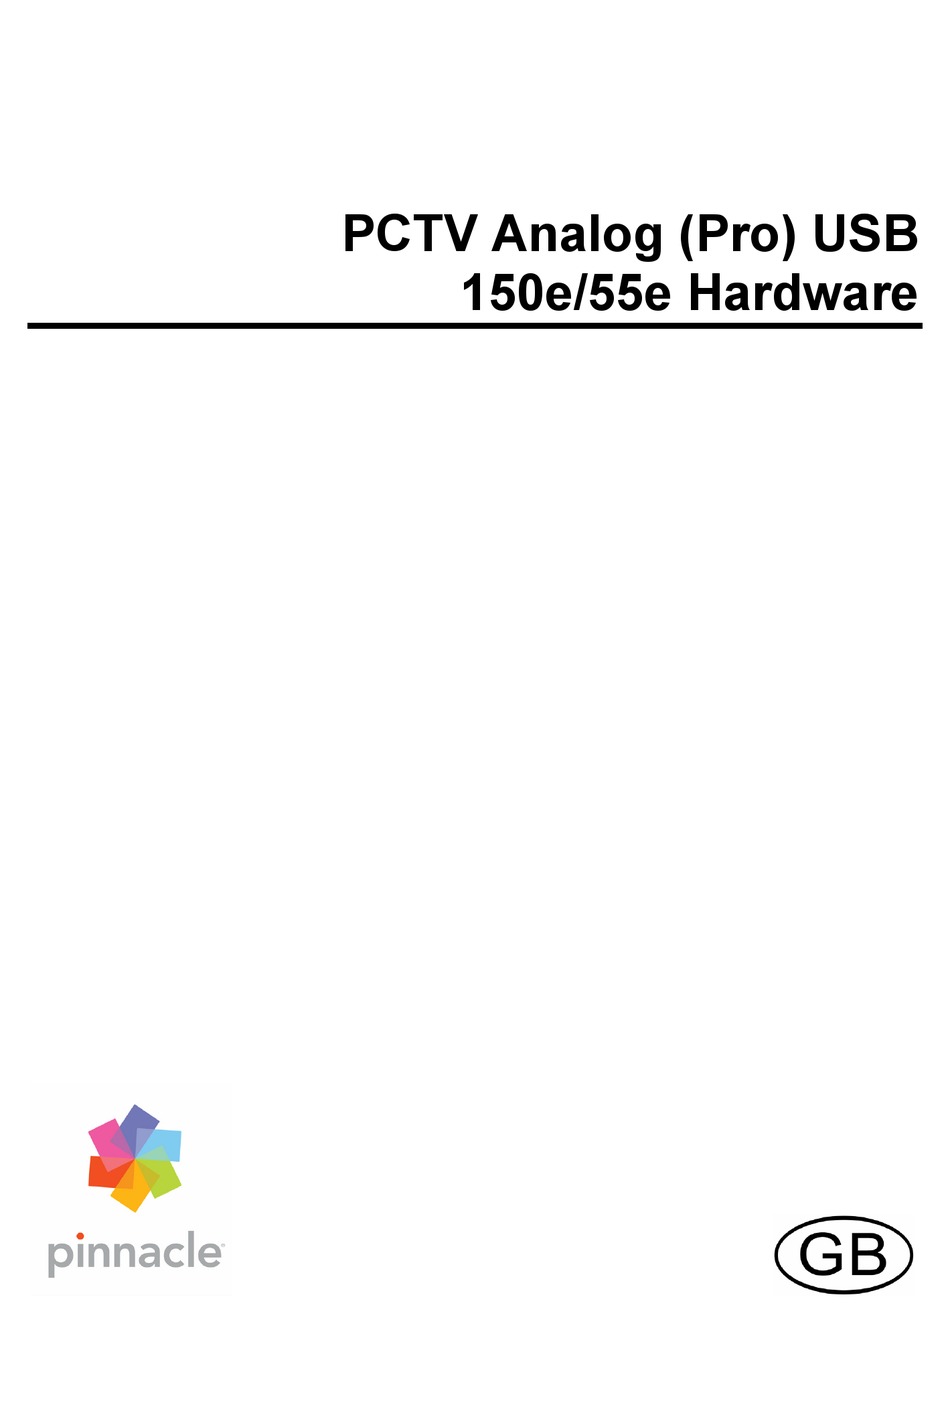 PINNACLE PCTV ANALOG (PRO) USB 150E USER MANUAL Pdf Download ManualsLib